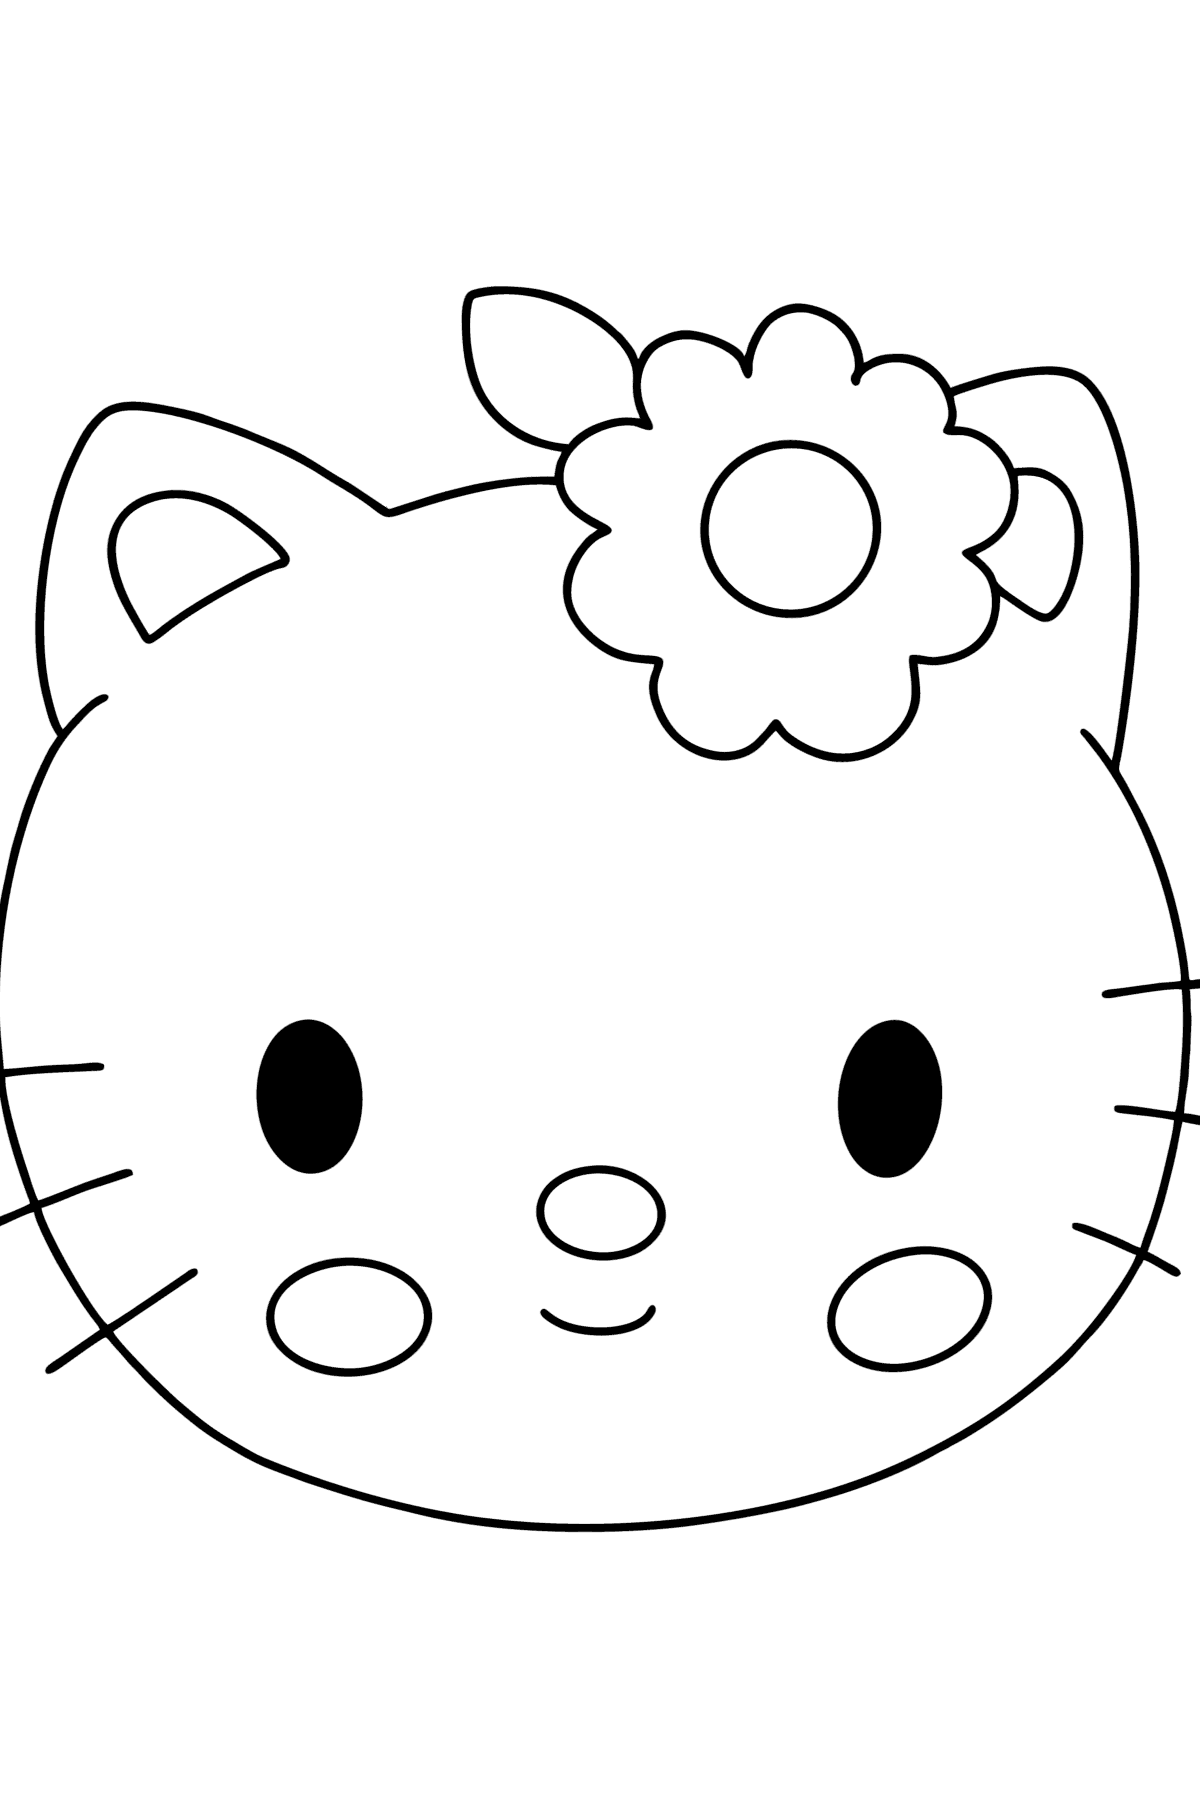 Desenho para colorir de focinho Hello Kitty - Imagens para Colorir para Crianças